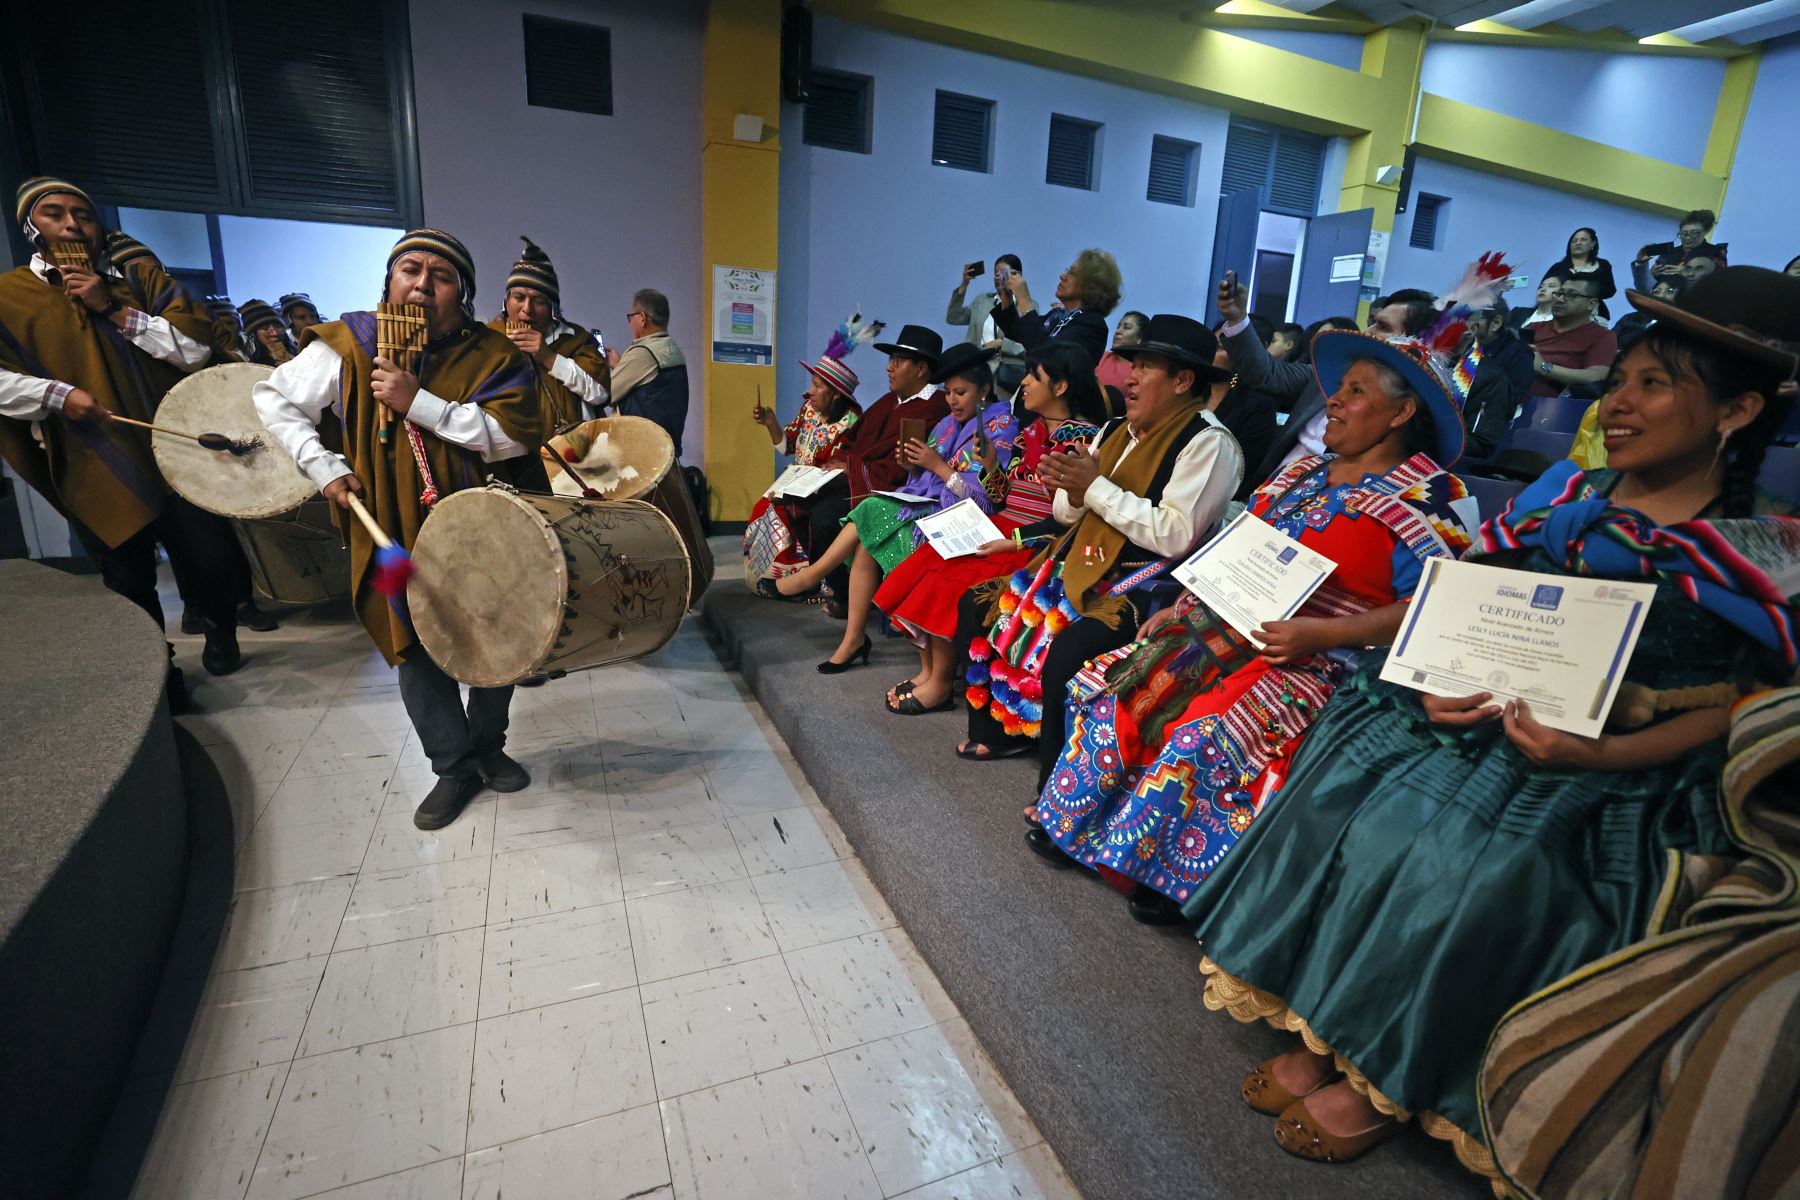 La ceremonia de graduación de la primera promoción de estudiantes aimara tuvo mucho color, música y costumbres ancestrales para desear lo mejor a los graduados. Foto: ANDINA/Vidal Tarqui